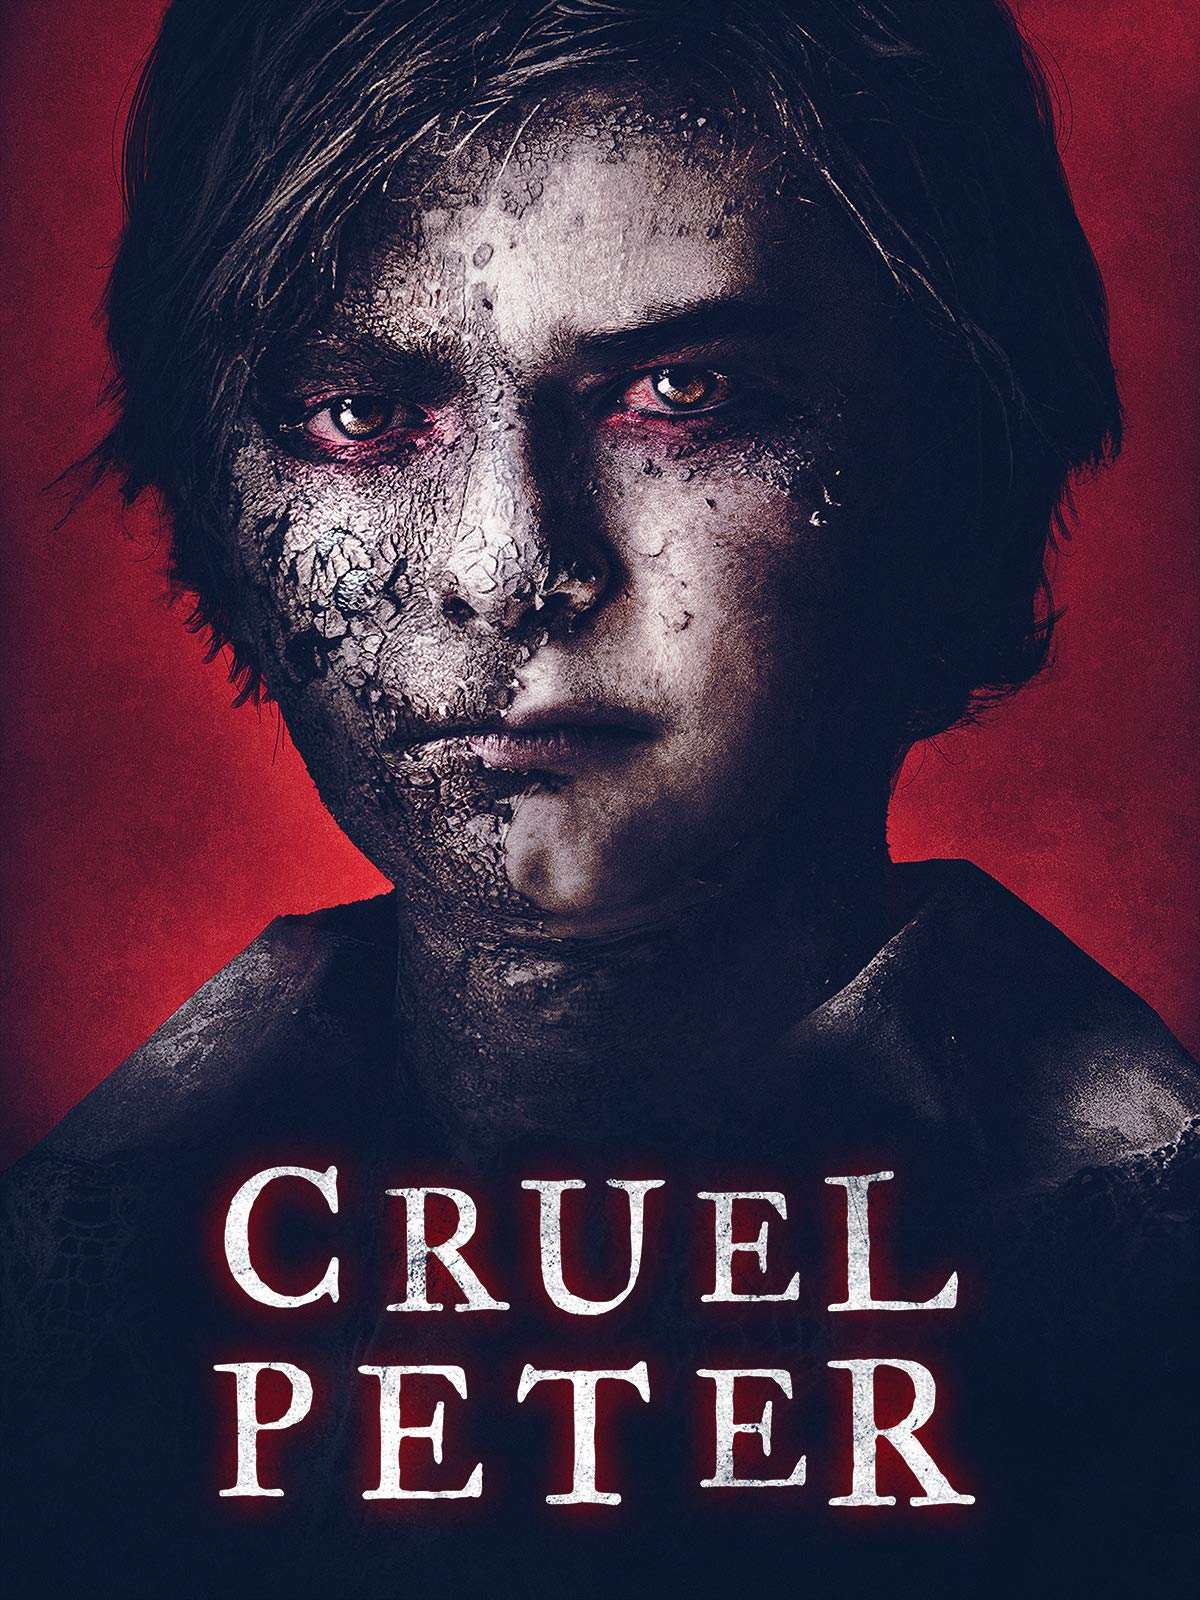 ดูหนังฝรั่ง Cruel Peter (2019) ปีเตอร์เด็กผู้มาจากนรก เต็มเรื่อง